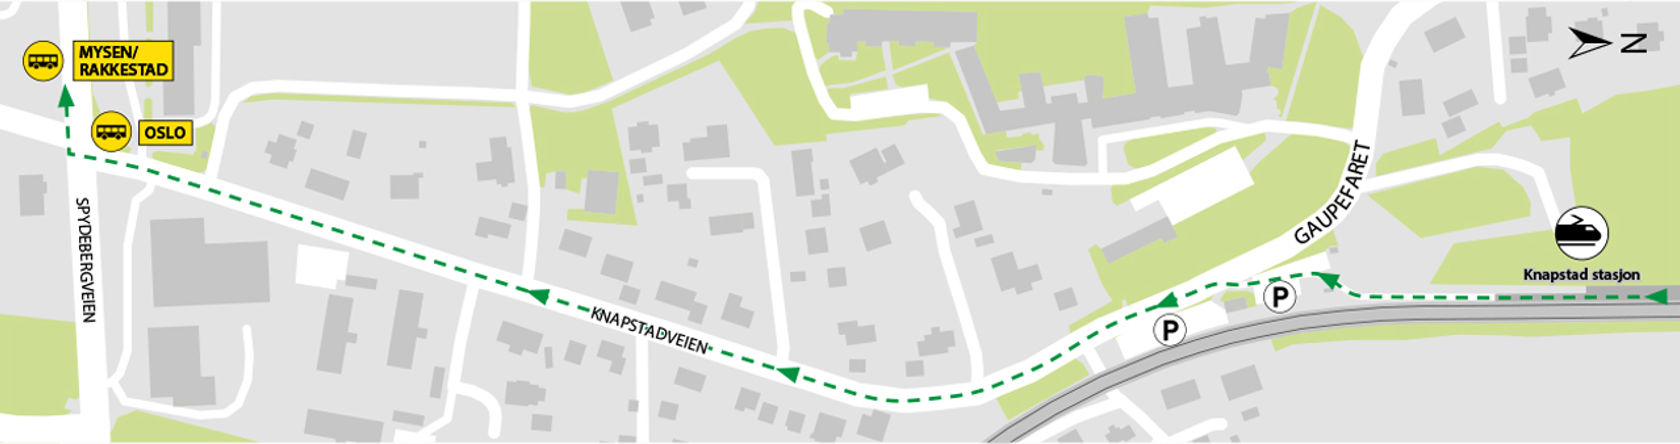 Kartet viser at bussene kjører fra bussholdeplassene Knapstad i Spydebergveien. 